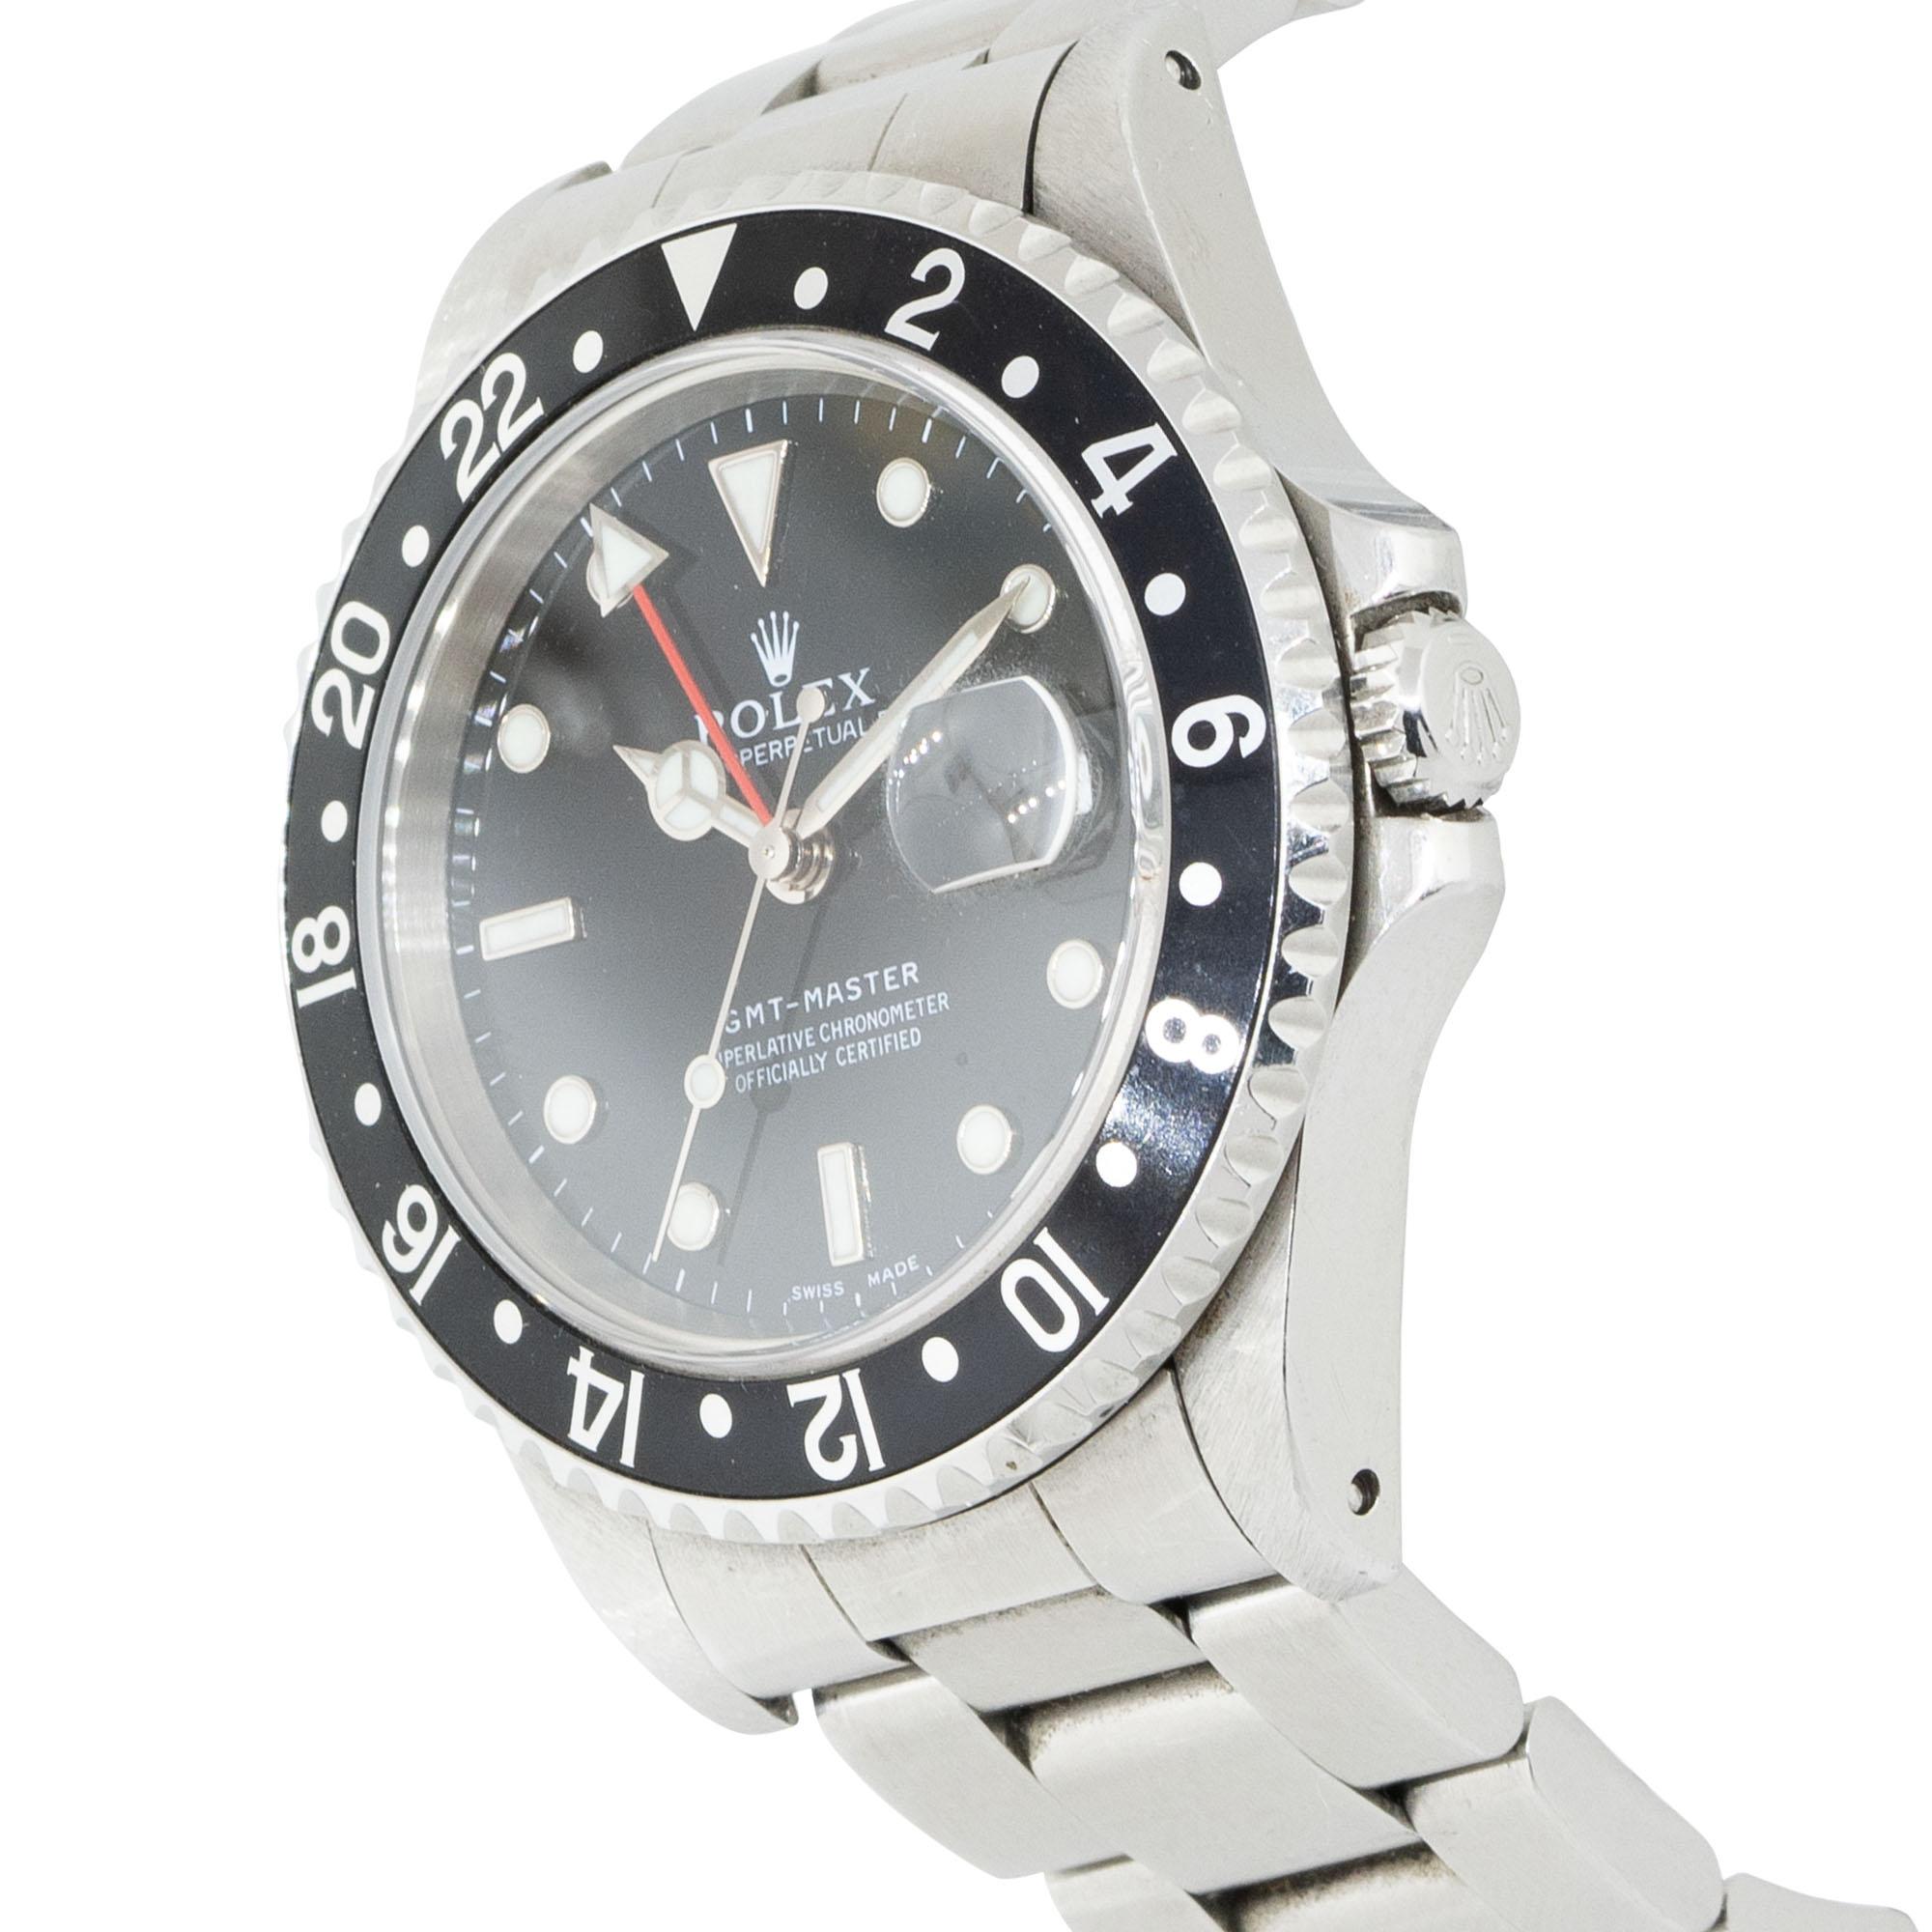 Die Rolex 16700 GMT-Master Edelstahluhr mit schwarzem Zifferblatt ist ein klassischer Zeitmesser, der für sein zeitloses Design und seine Funktionalität bekannt ist. Diese Uhr ist aus robustem Edelstahl gefertigt und verfügt über ein markantes